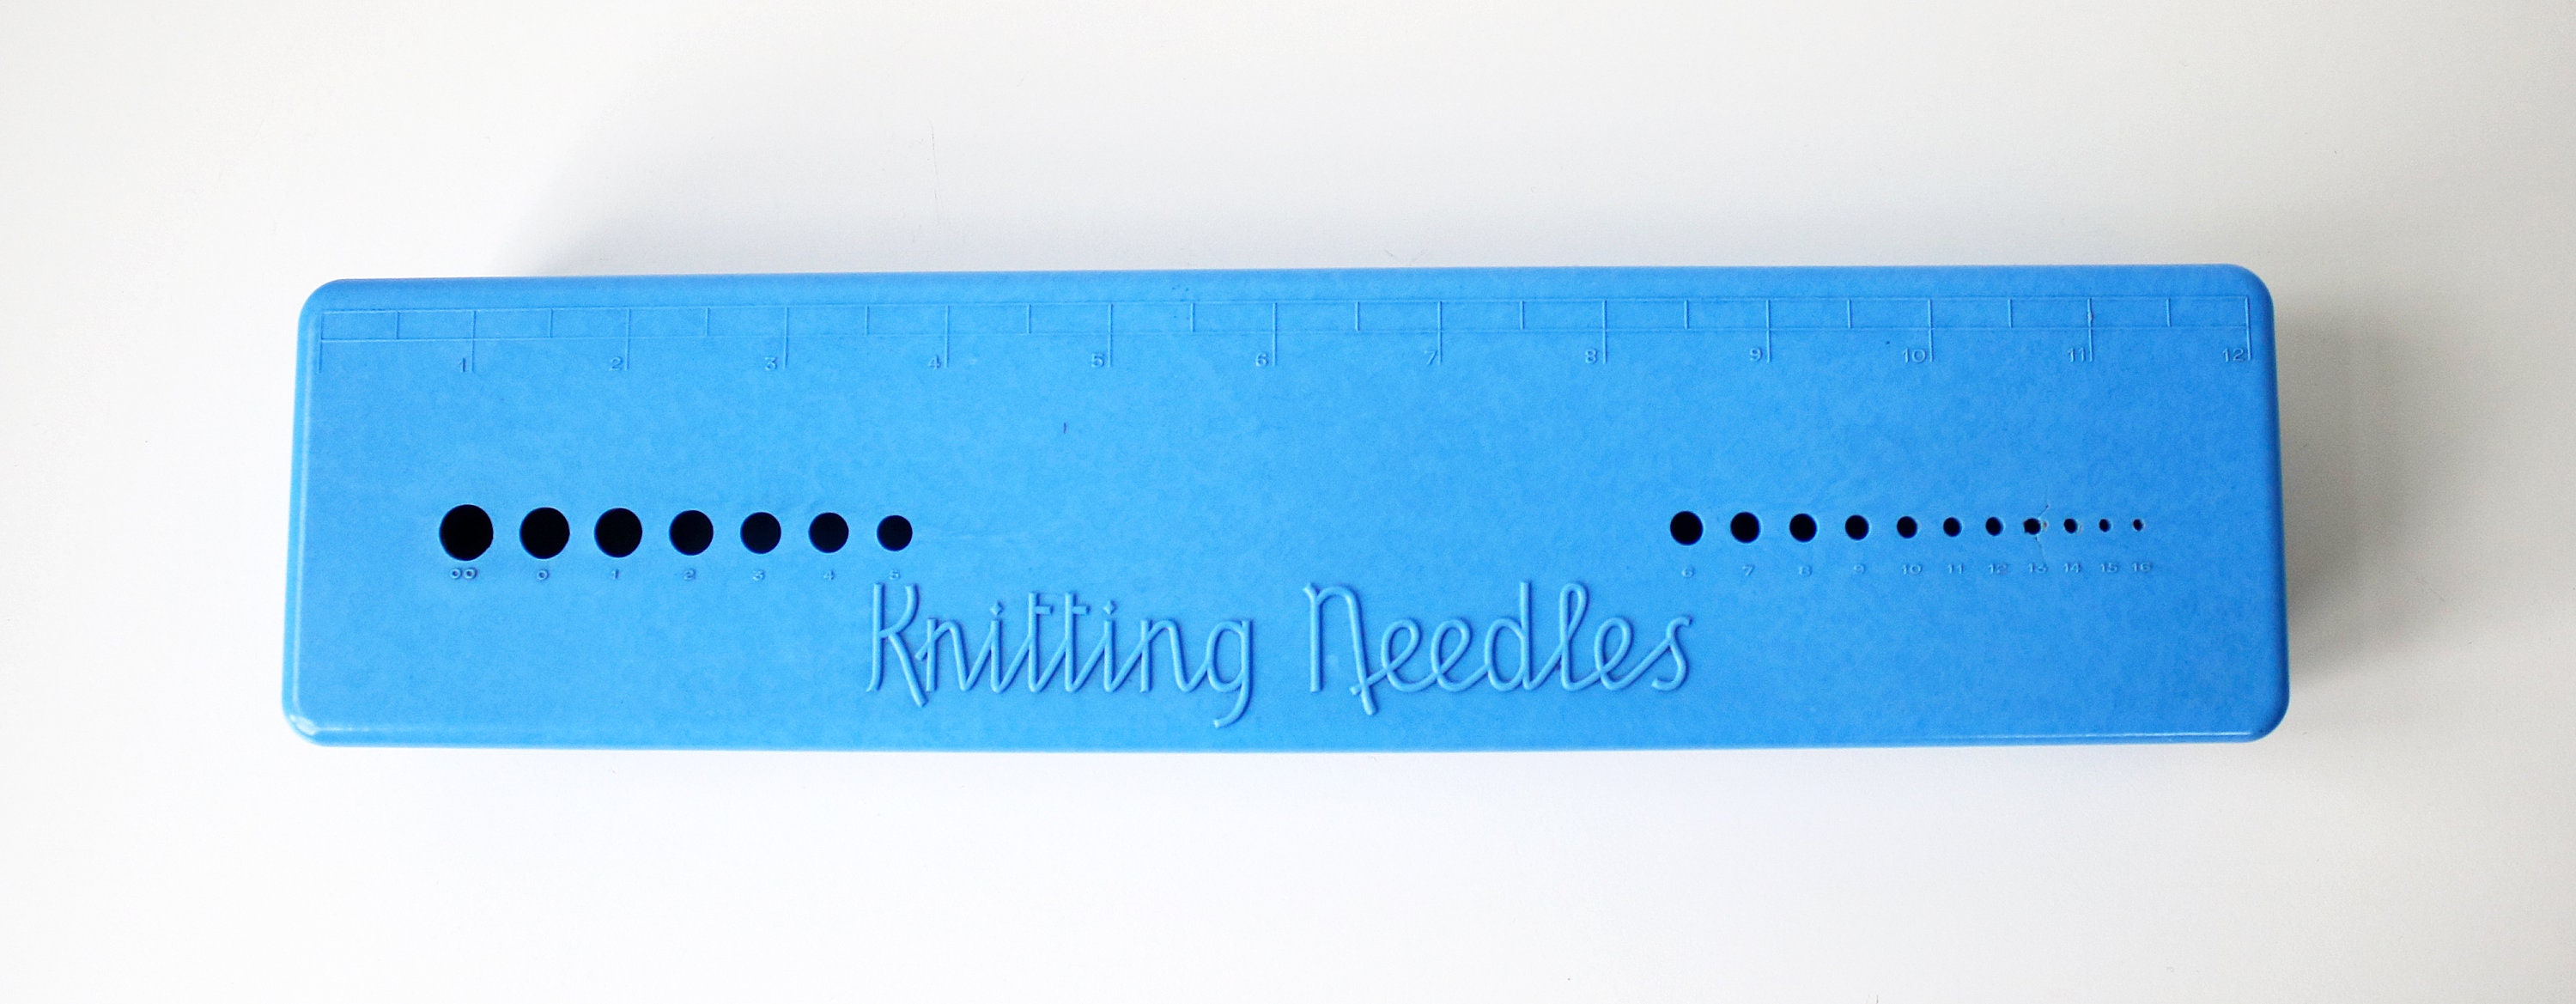 knitting needle case blue